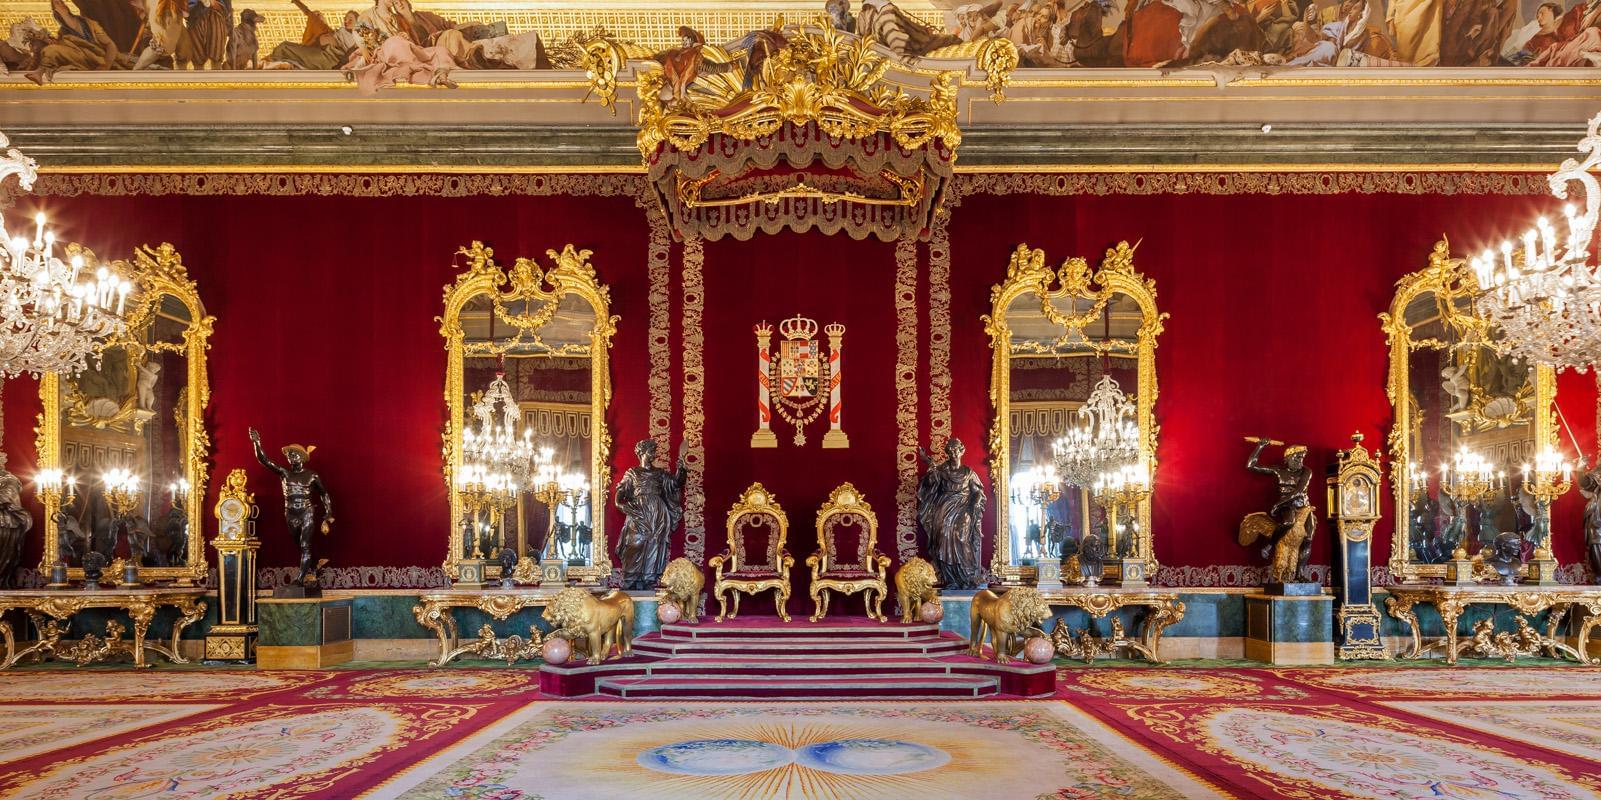 Inside Royal Palace of Madrid